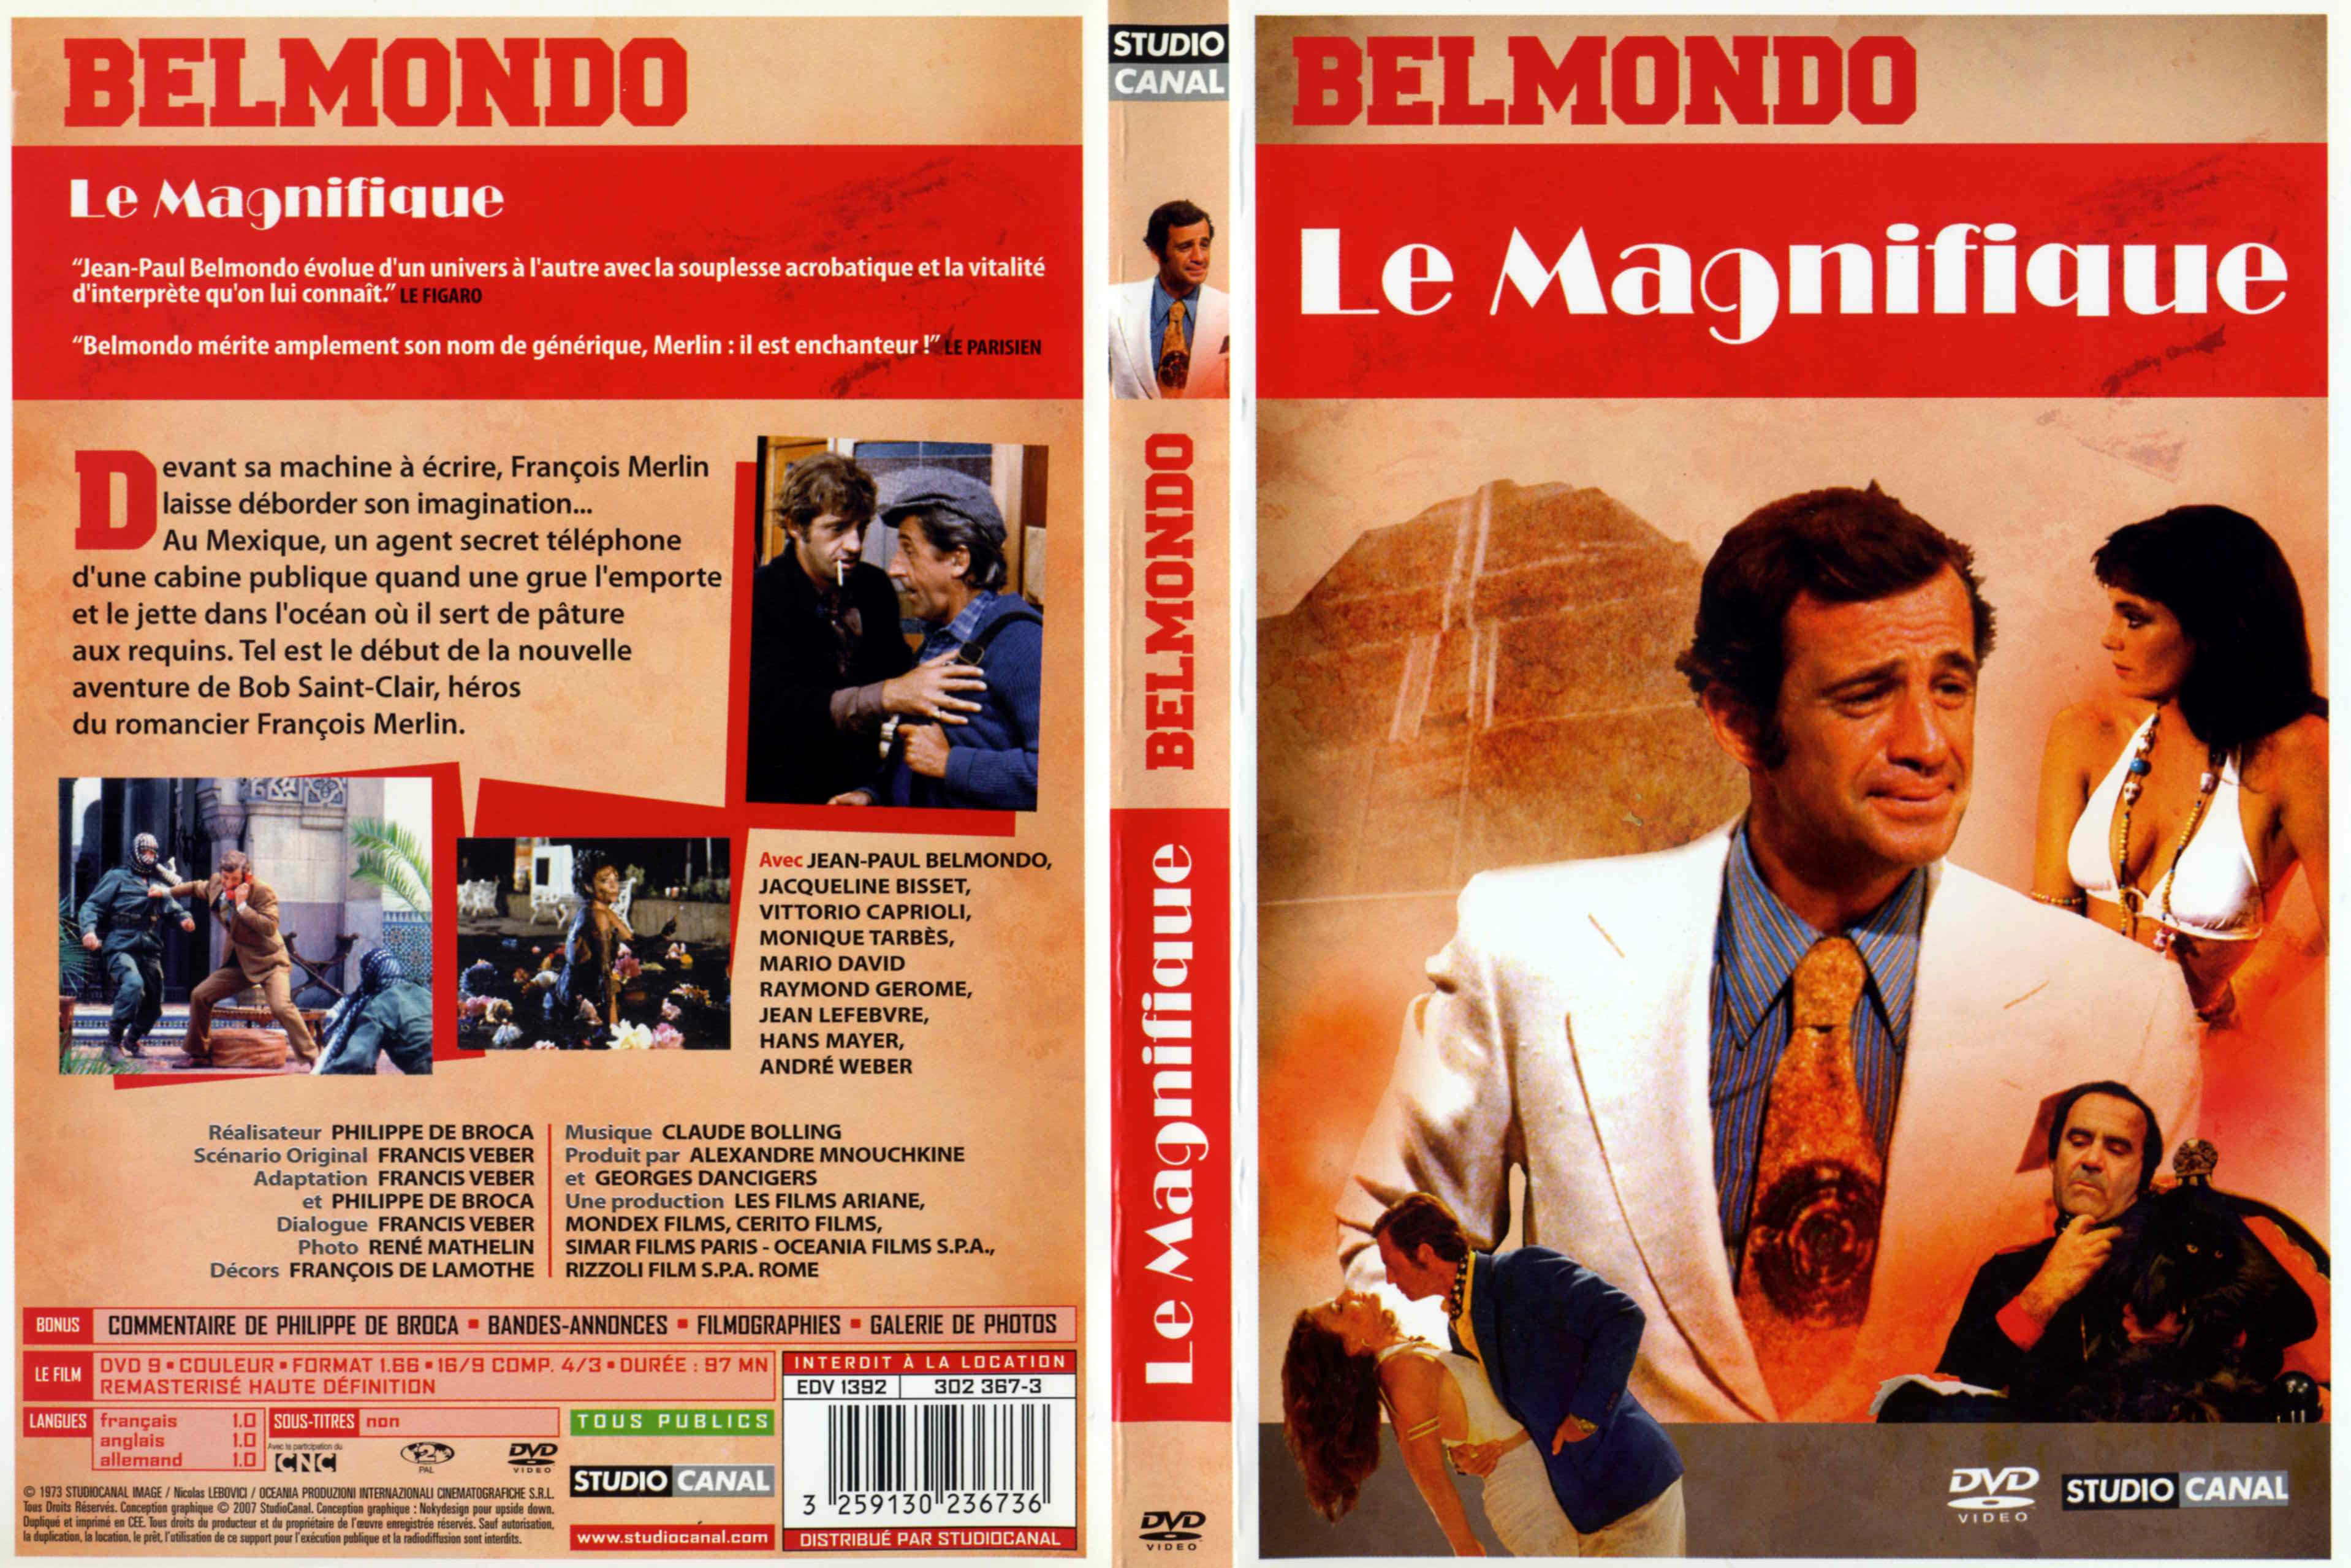 Jaquette DVD Le magnifique (Belmondo) v3